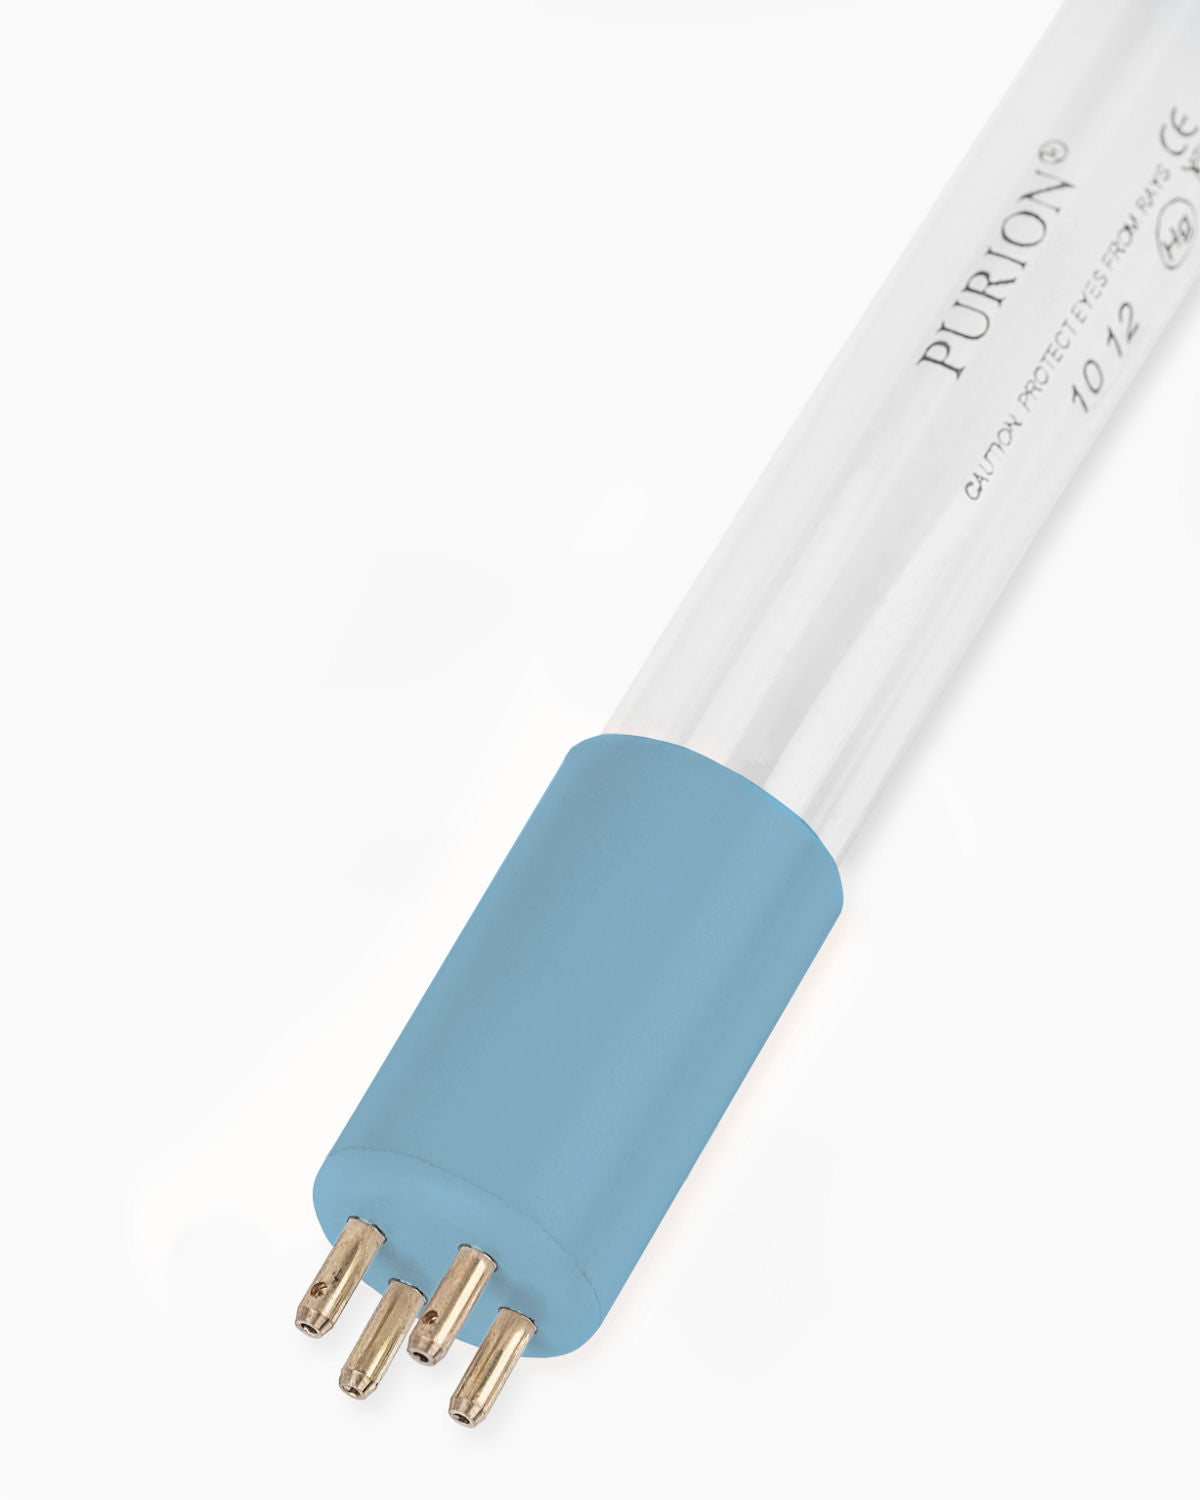 Eine PURION 2501 DUAL Basic Blaulichtröhre auf weißem Hintergrund mit UV-C-Desinfektionstechnologie. (Marke: PURION GmbH)